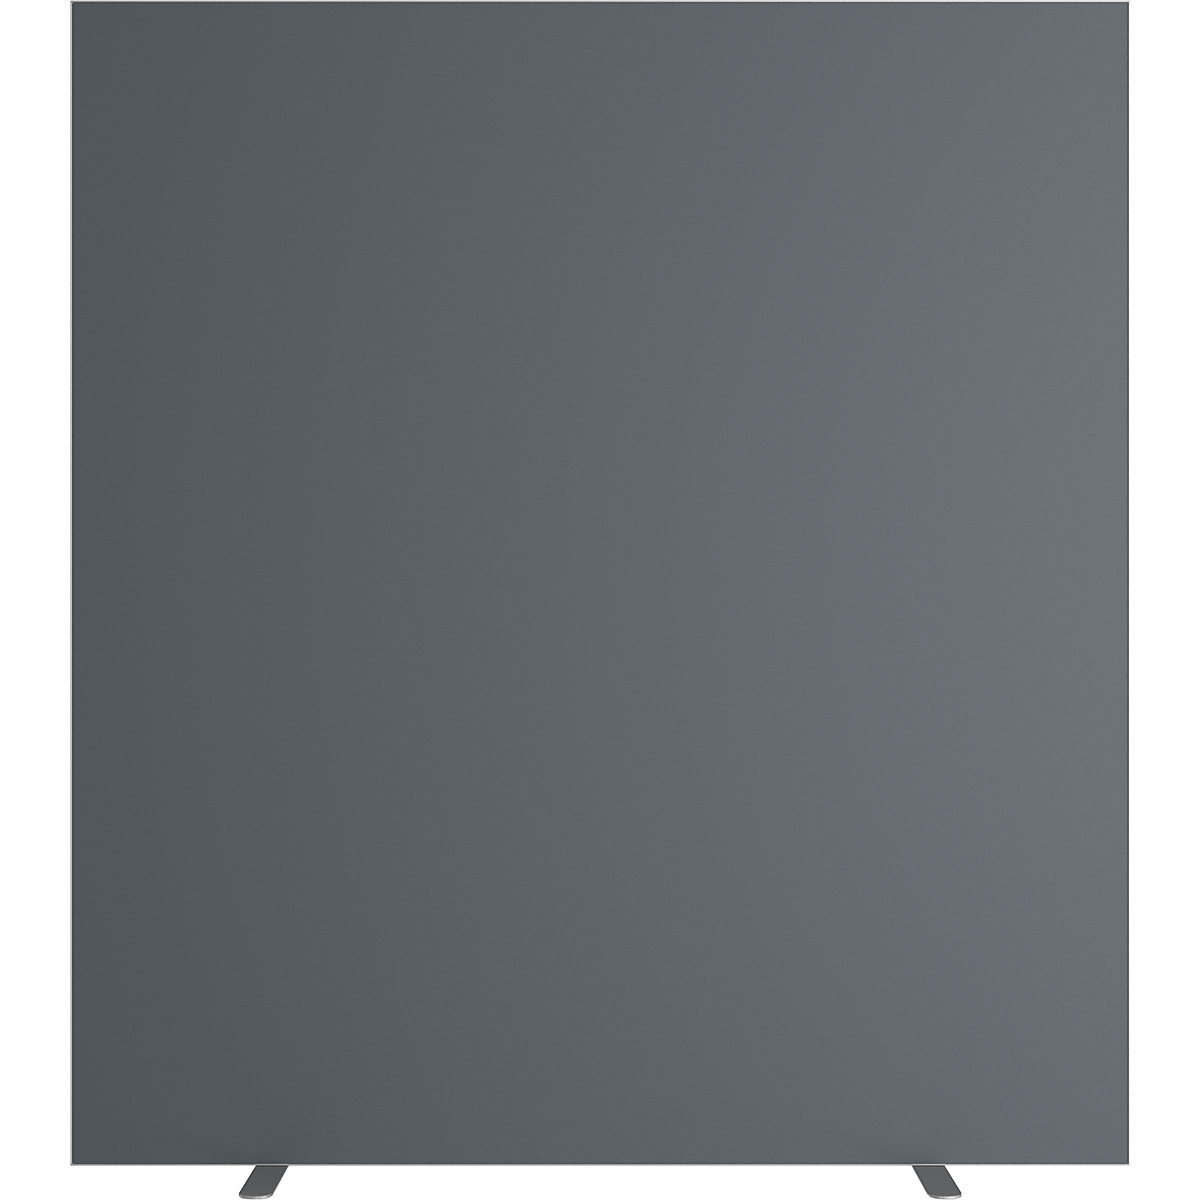 Dělicí stěna easyScreen, jednobarevná, s protihlukovou úpravou, antracitová, šířka 1600 mm-8